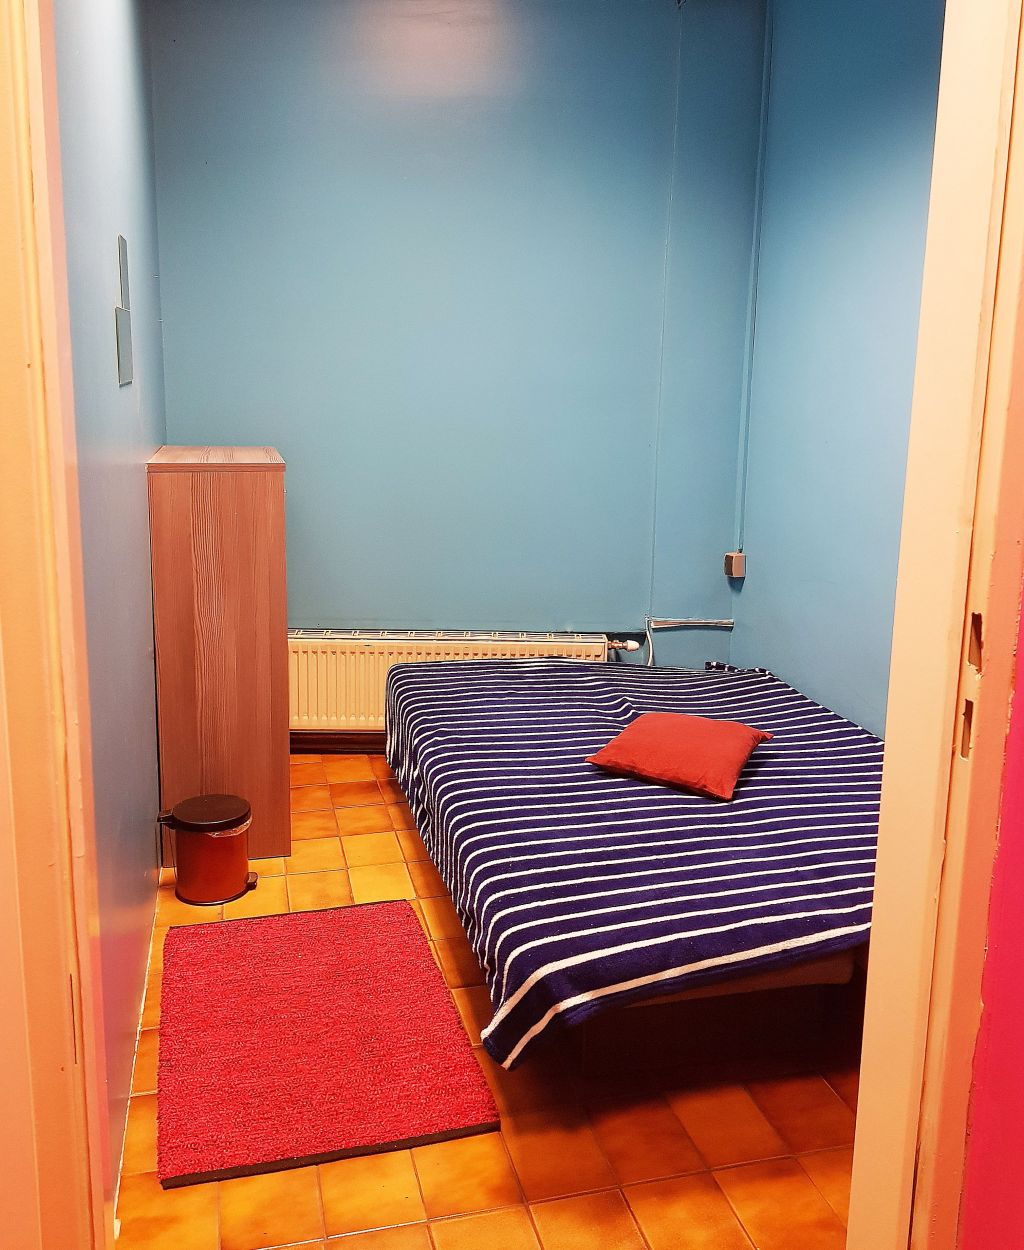 Studio 69A - Wir bieten Zimmer für Mädchen! in 1160 Wien - Bild 4